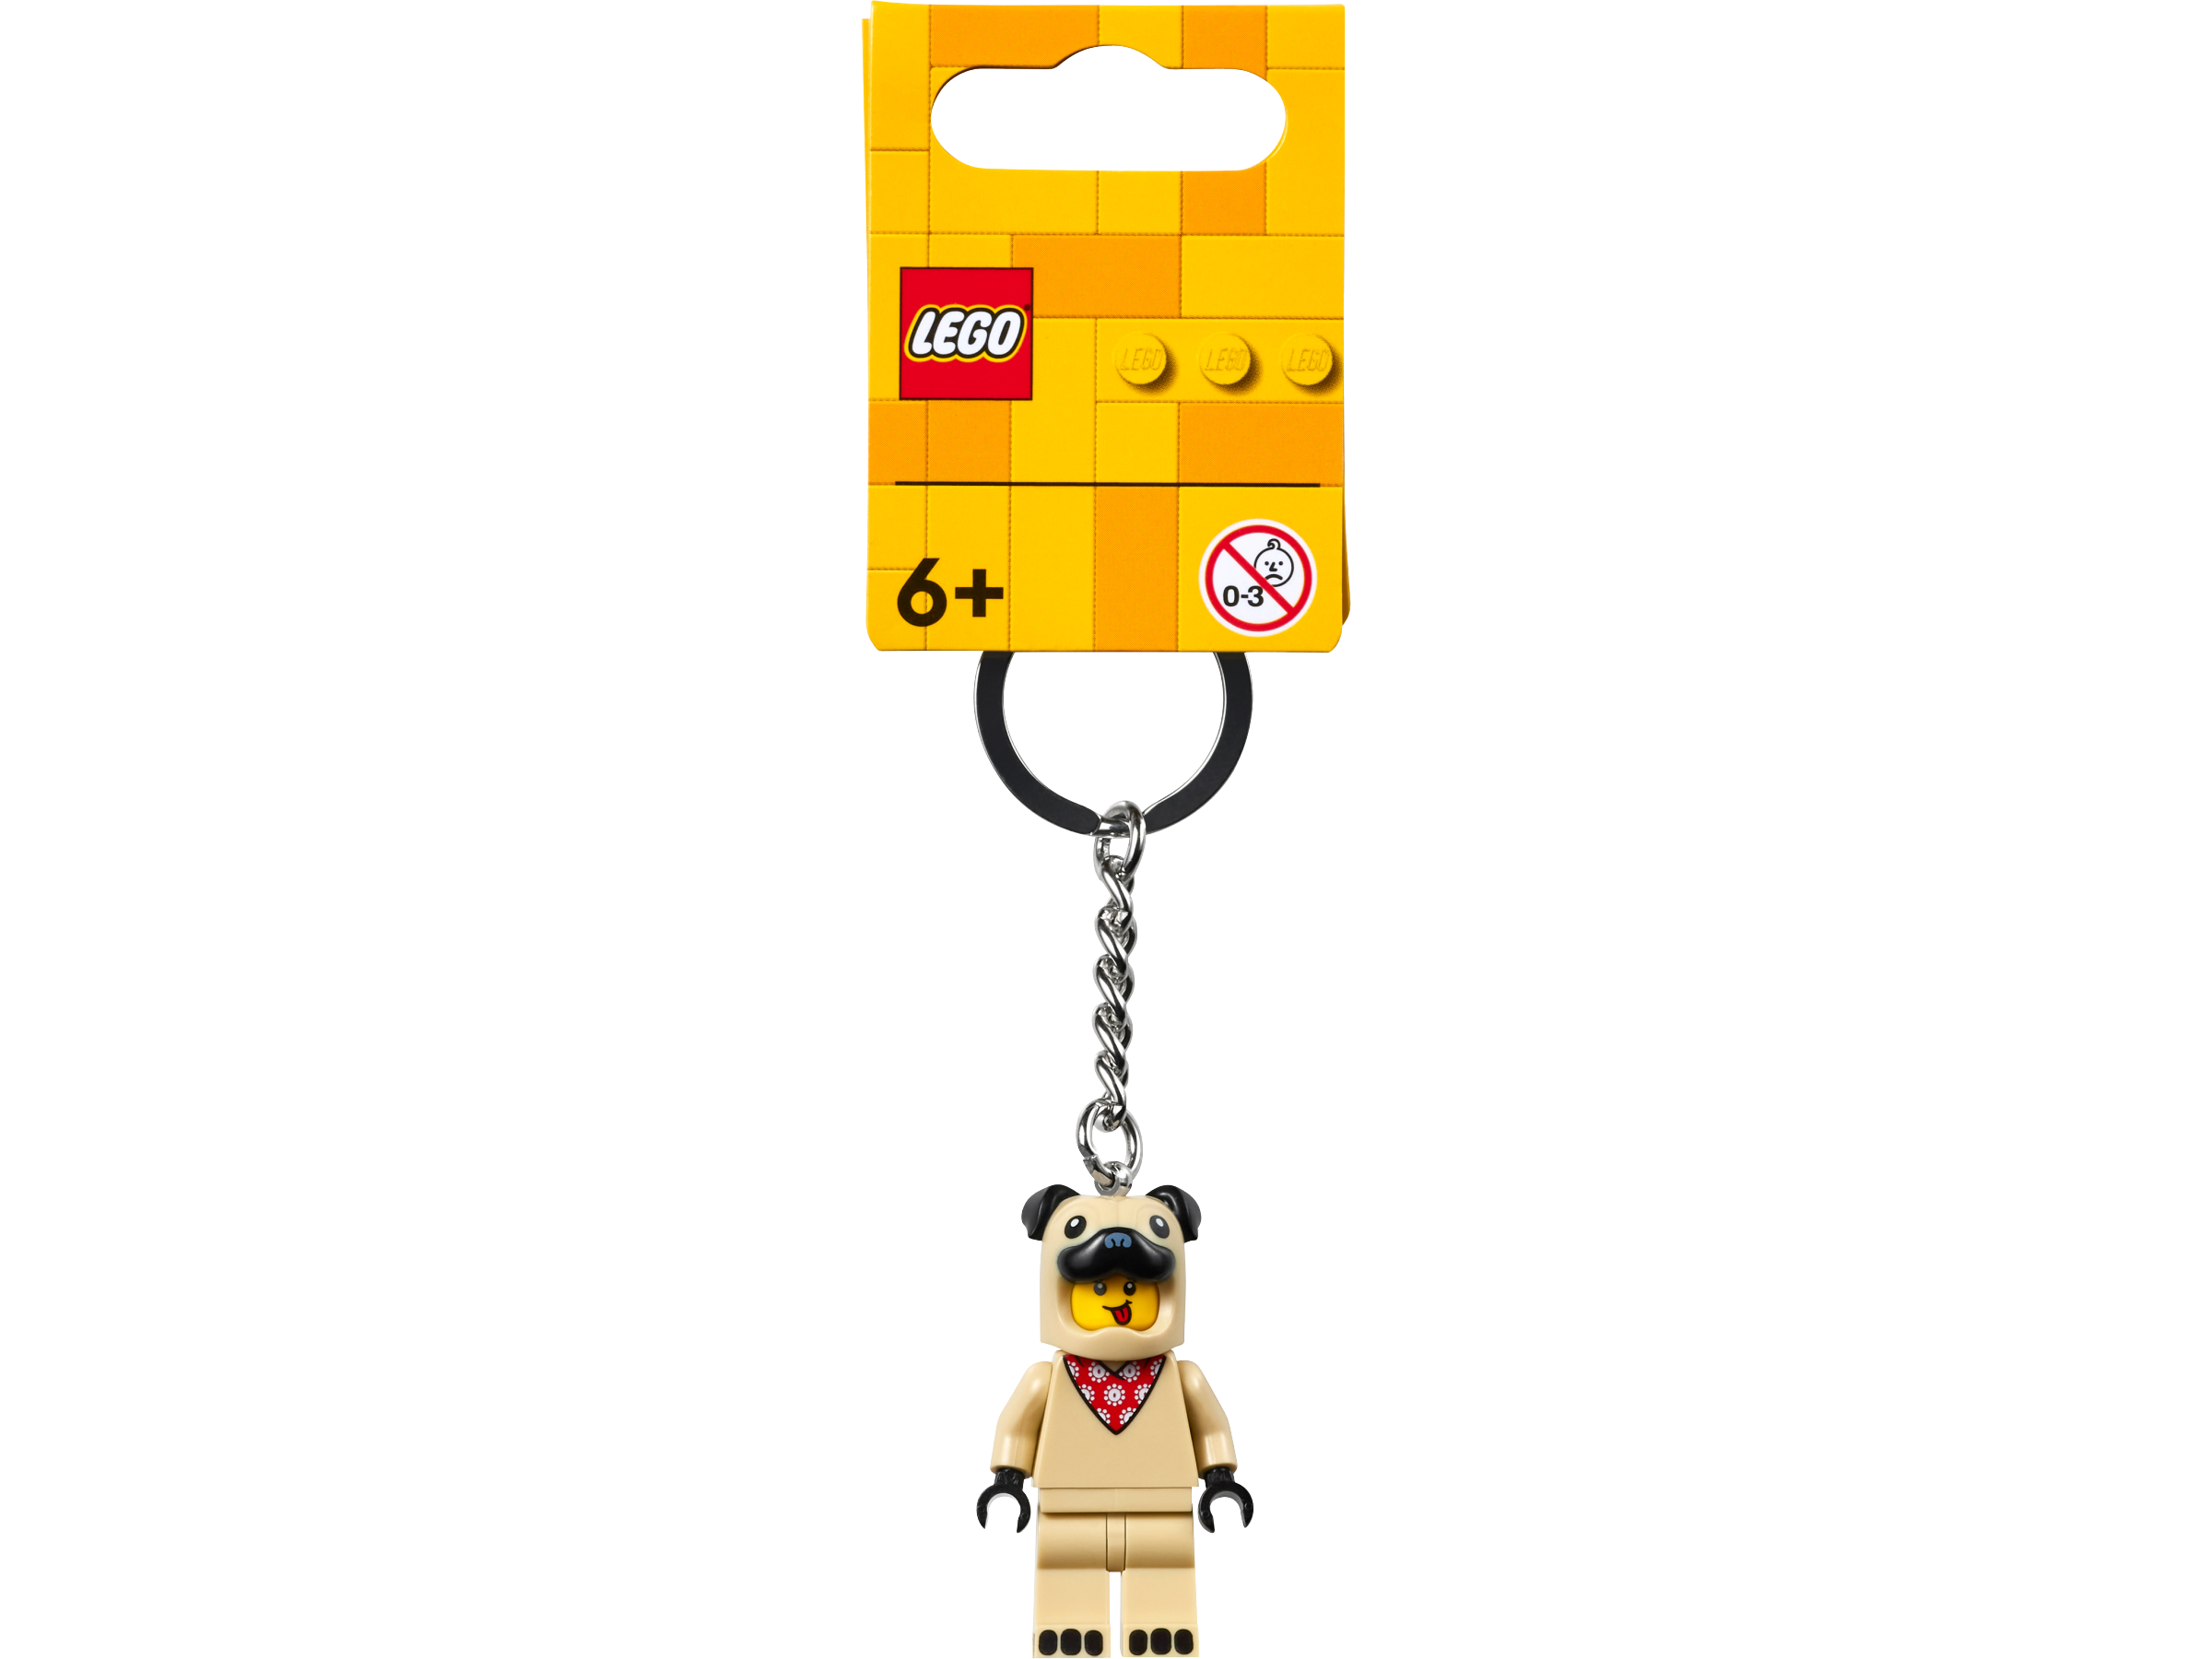 Llavero Lego block – Photo & Shop